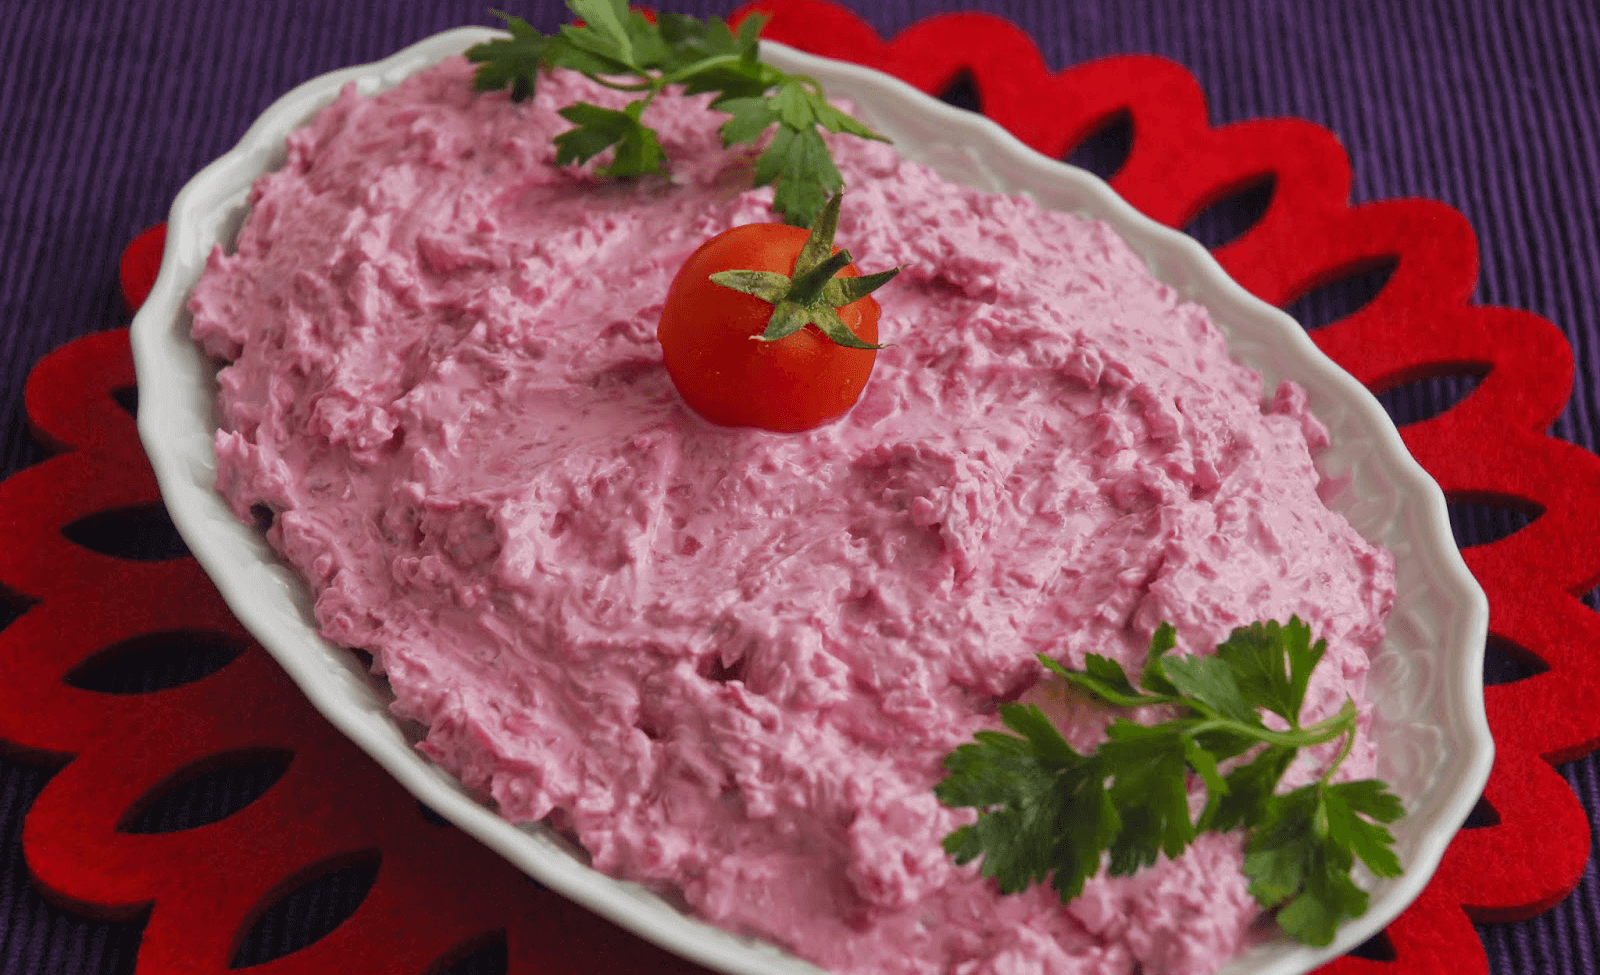 Rüben salat - Pancar Salatası